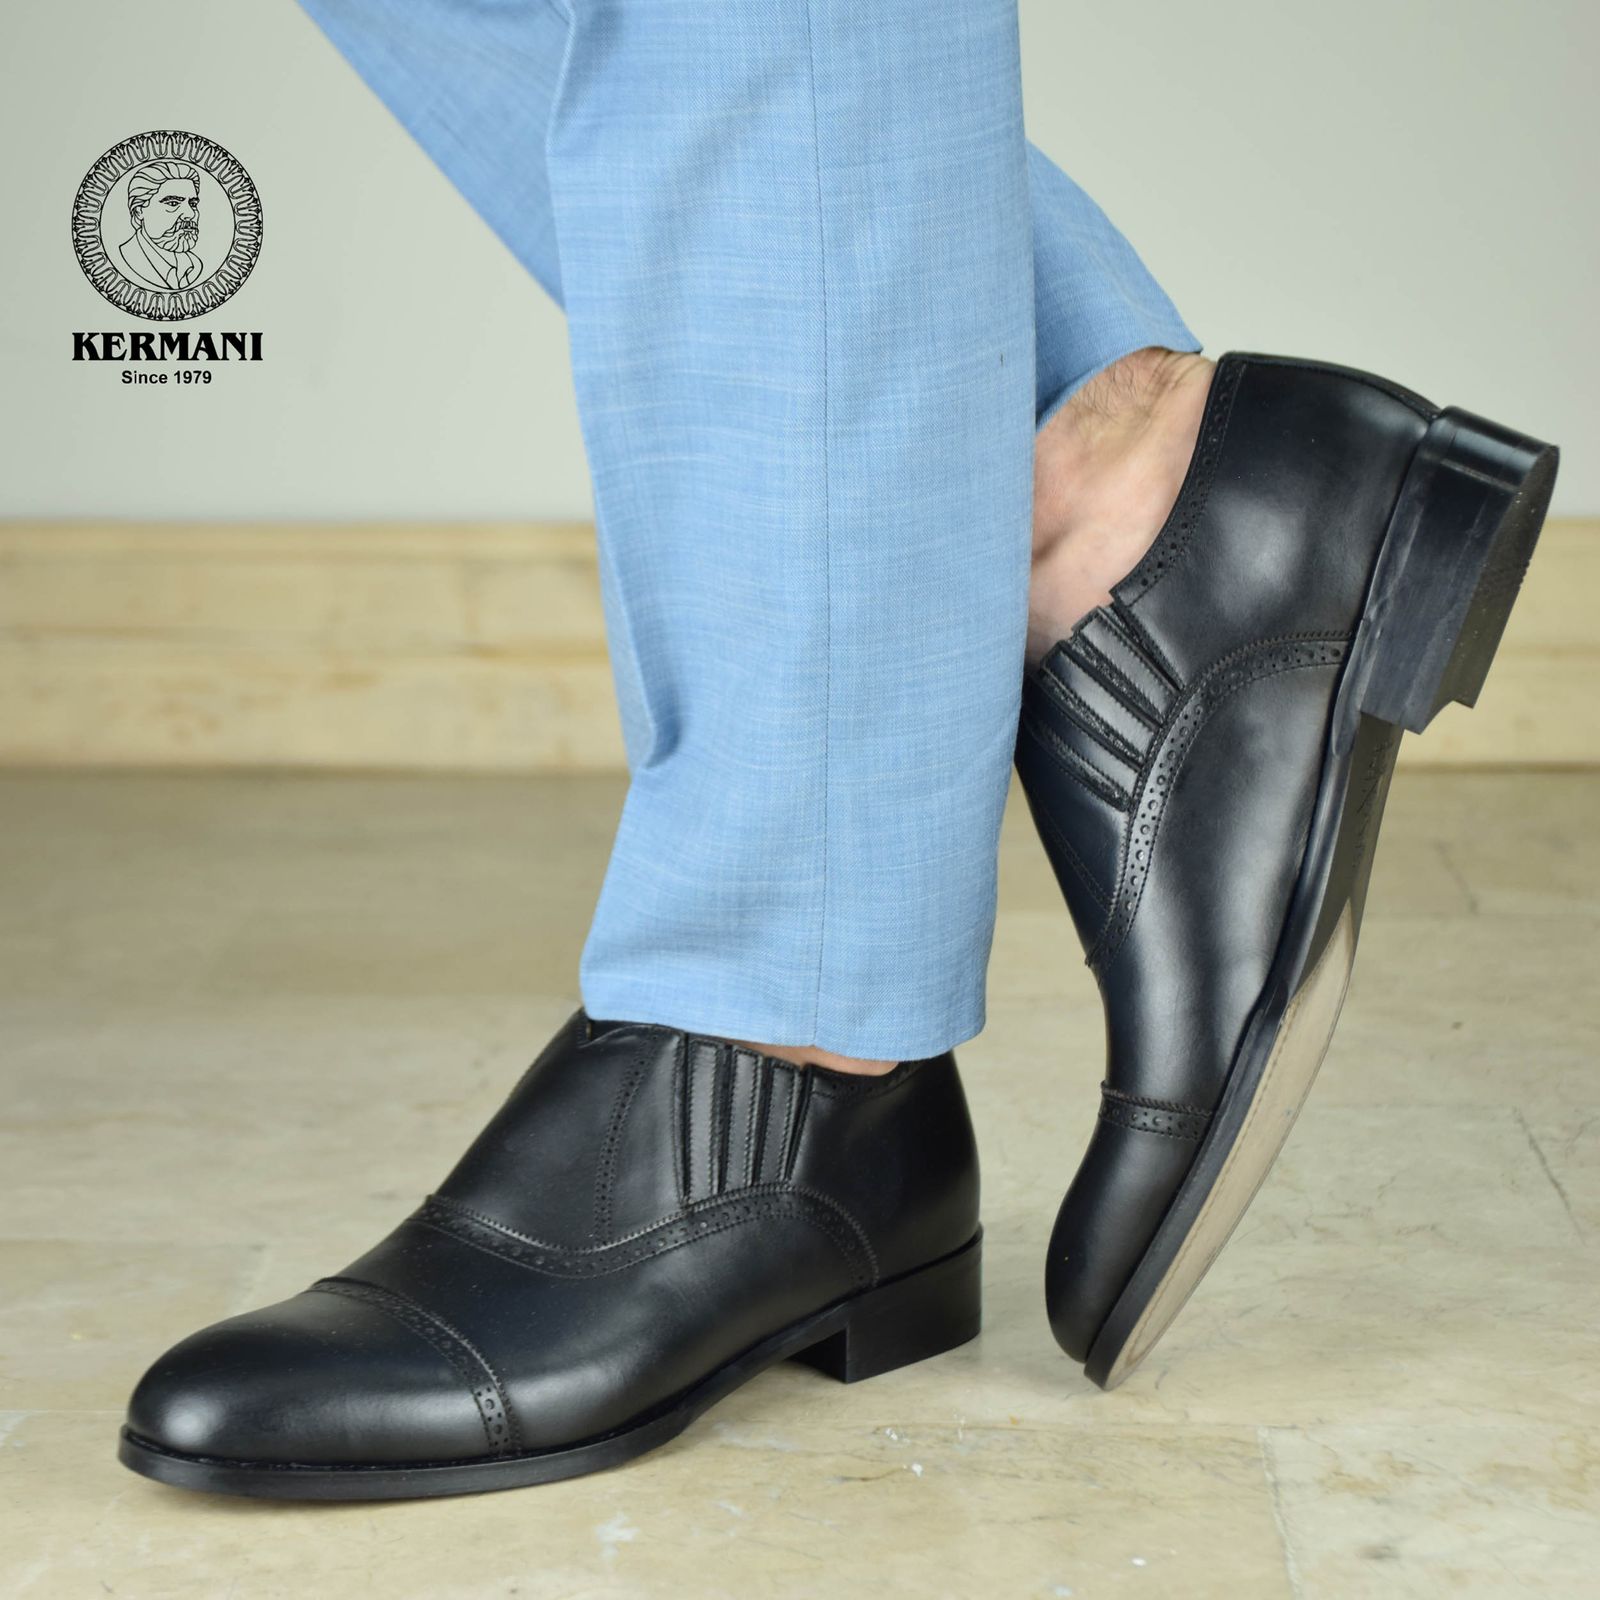 کفش مردانه کرمانی مدل چرم دستدوز طبیعی کد 1070 رنگ مشکی -  - 2